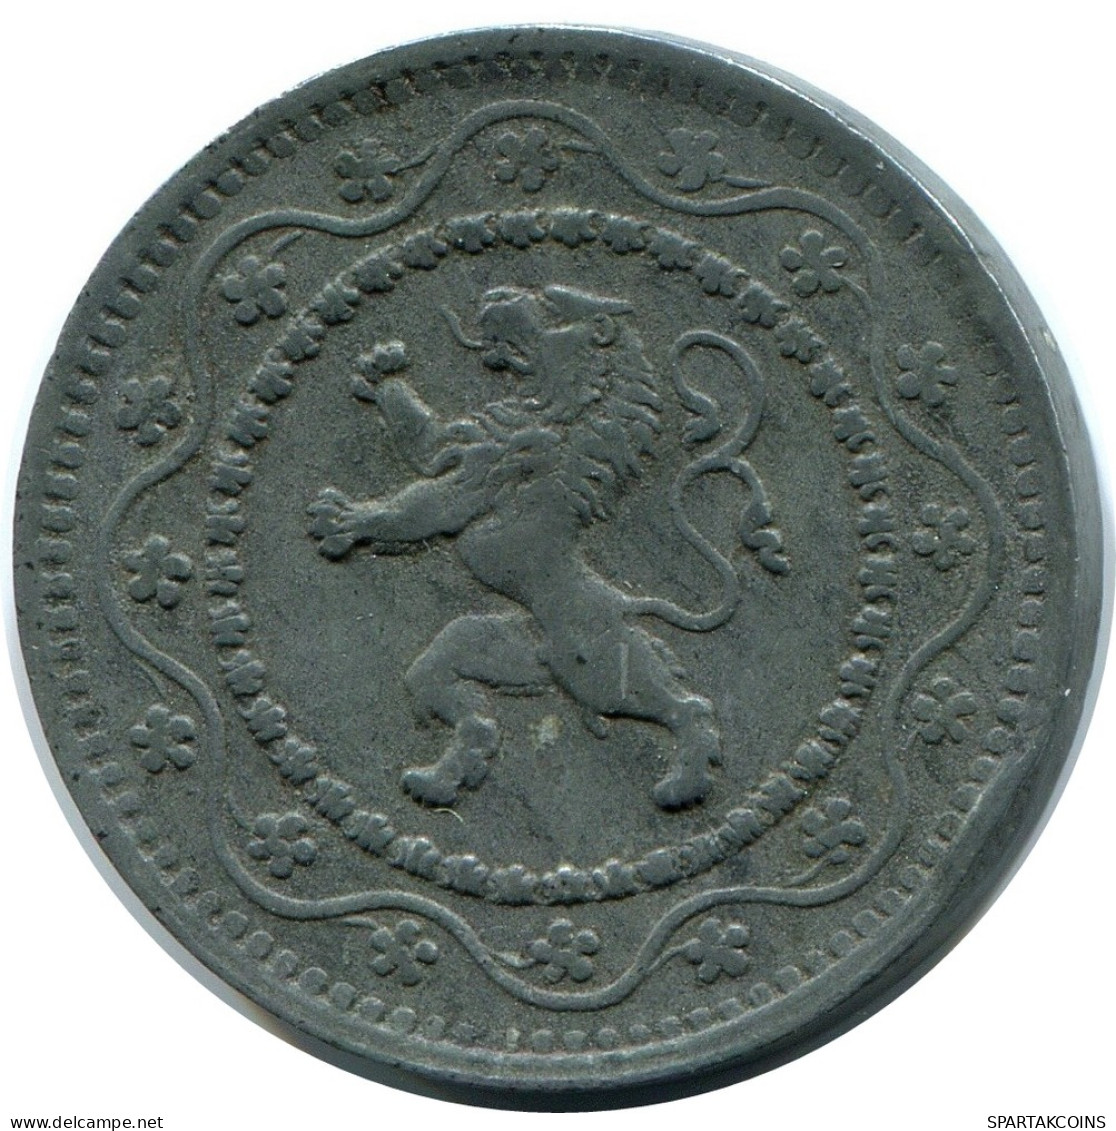 10 CENTIMES 1916 DUTCH Text BELGIUM Coin #BA411.U - 10 Centimes